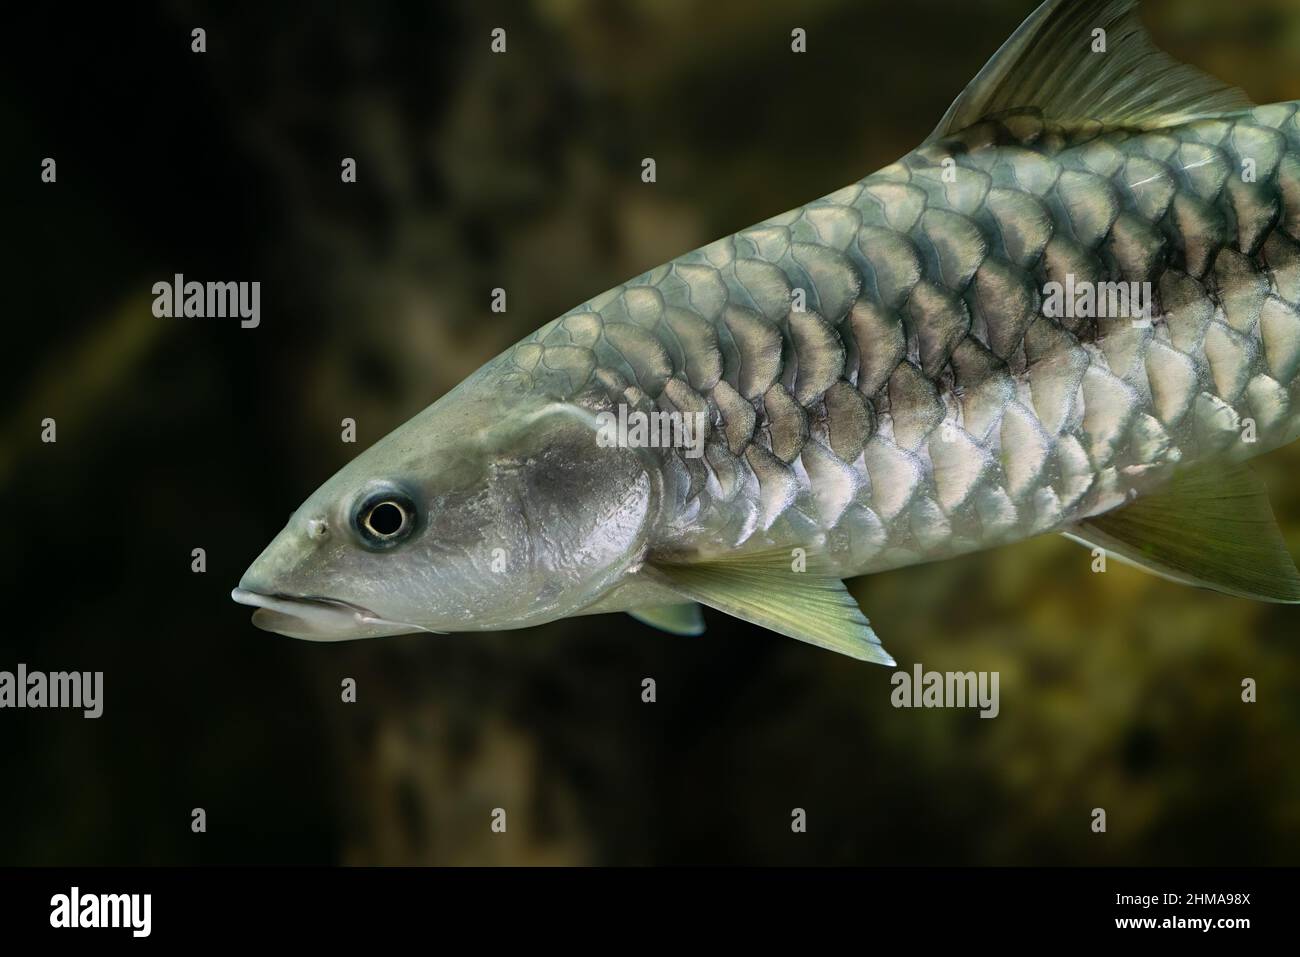 Detalle de Tor putitora, el mahseer de Putitor, o mahseer del Himalaya, el pez nacional de Pakistán, nadando en el agua con fondo verdoso Foto de stock